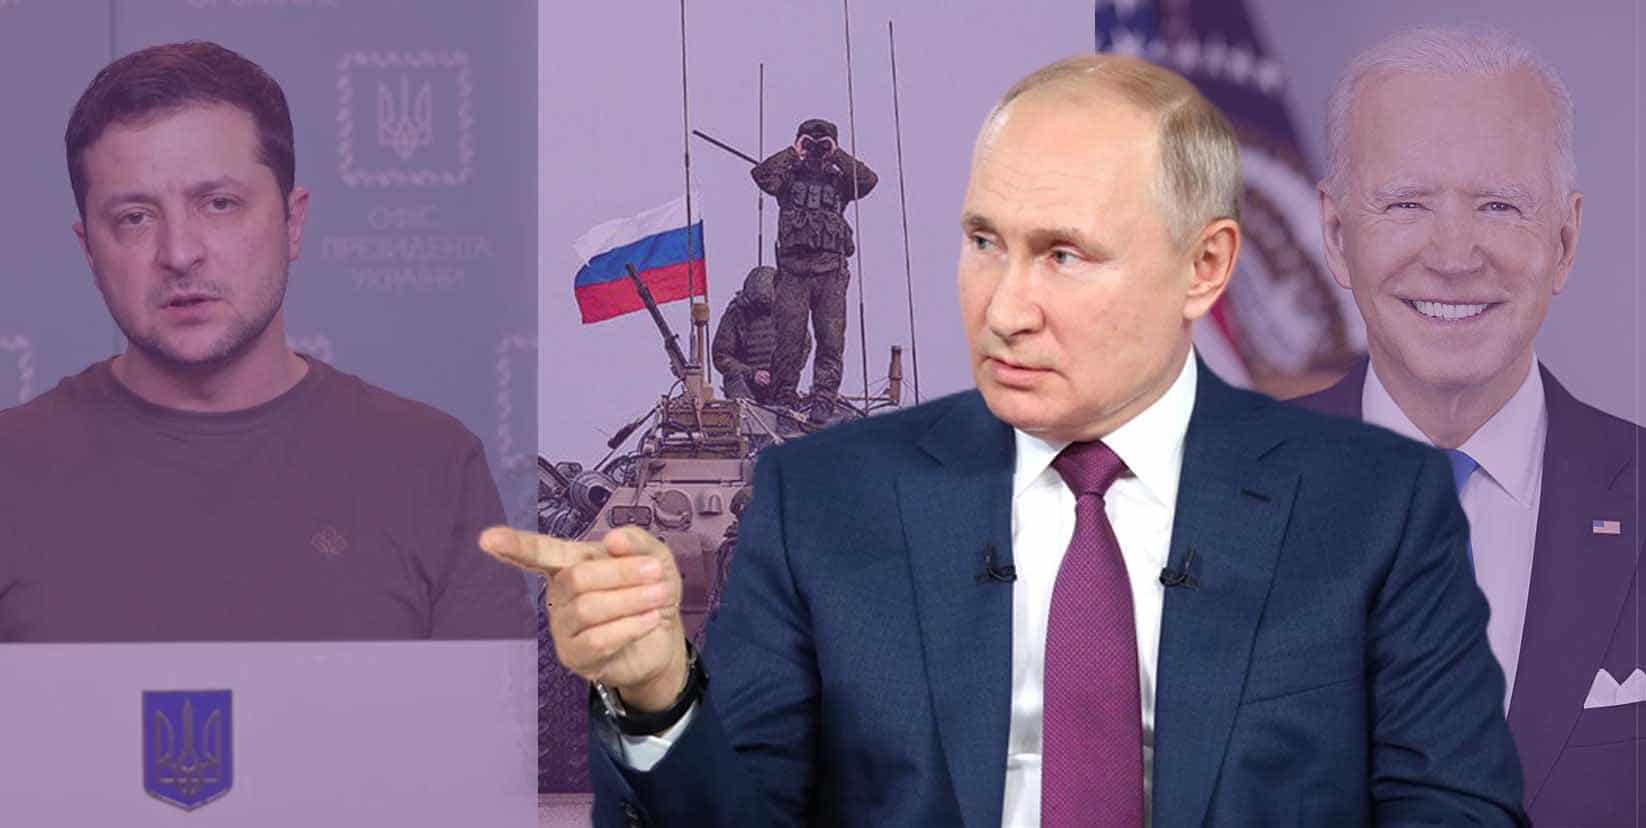 La invasión de Ucrania se ha basado en 3 mentiras que Putín se ha creído, según el exministro de Exteriores ruso Kozyrev